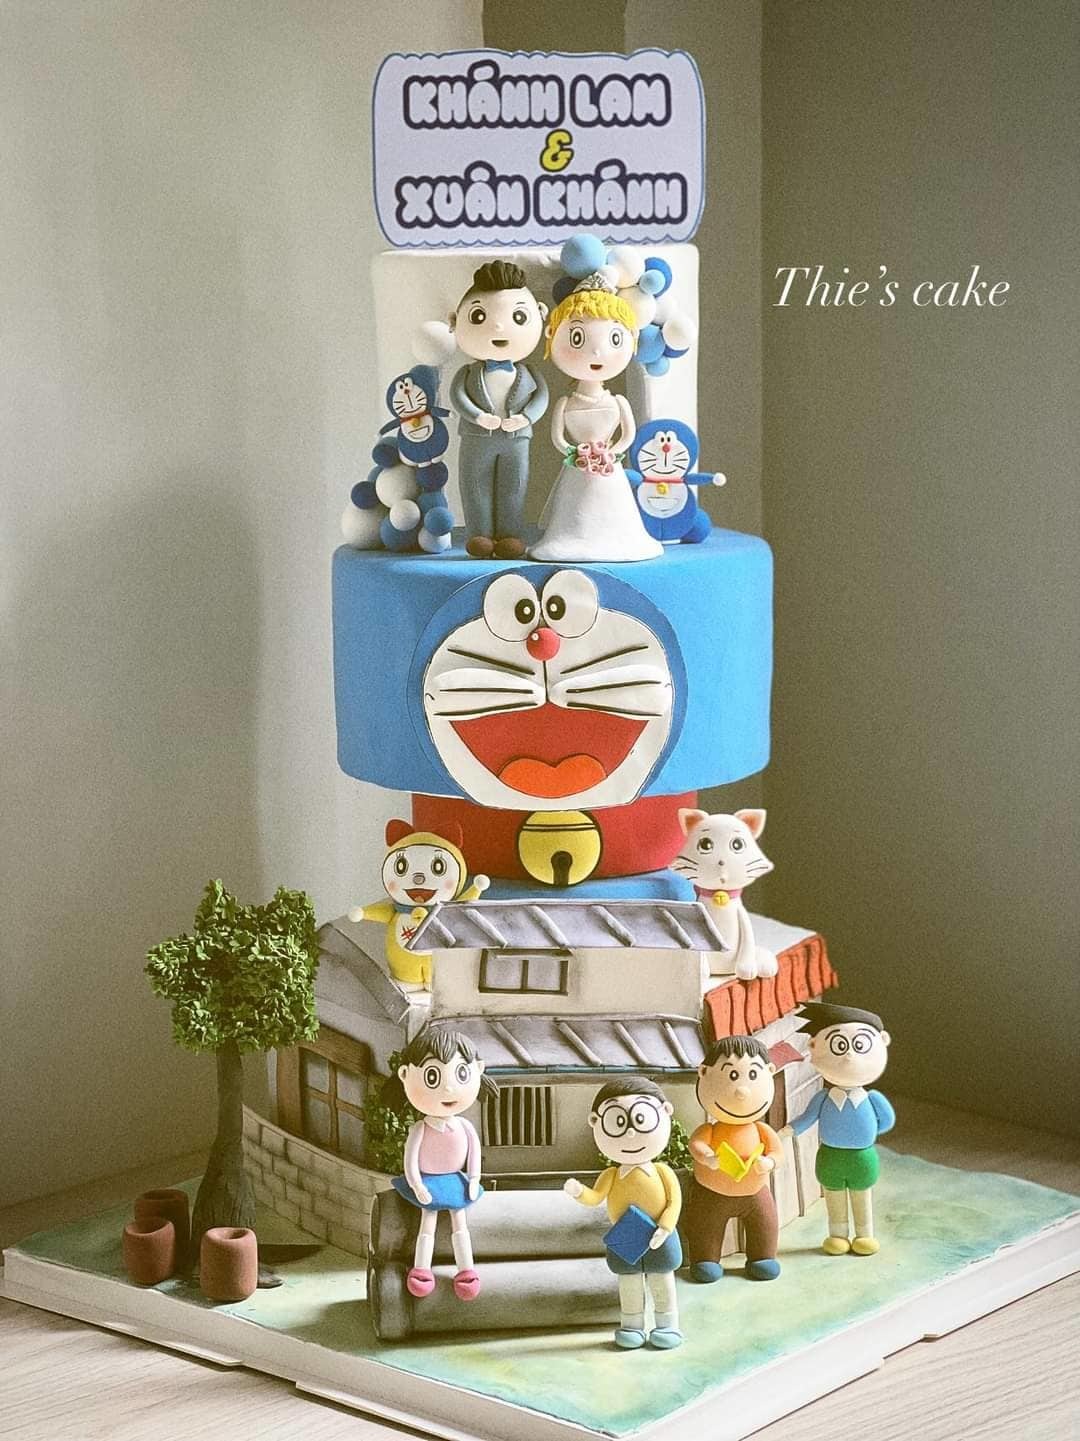 Đám cưới trong truyện tranh Doraemon sẽ khiến các fan cuồng phải ngất ngây vì quá đẹp và đáng yêu. Đón xem hình ảnh này để trải nghiệm những cung bậc cảm xúc cực kỳ đáng yêu và romatic của Doraemon và bạn bè.